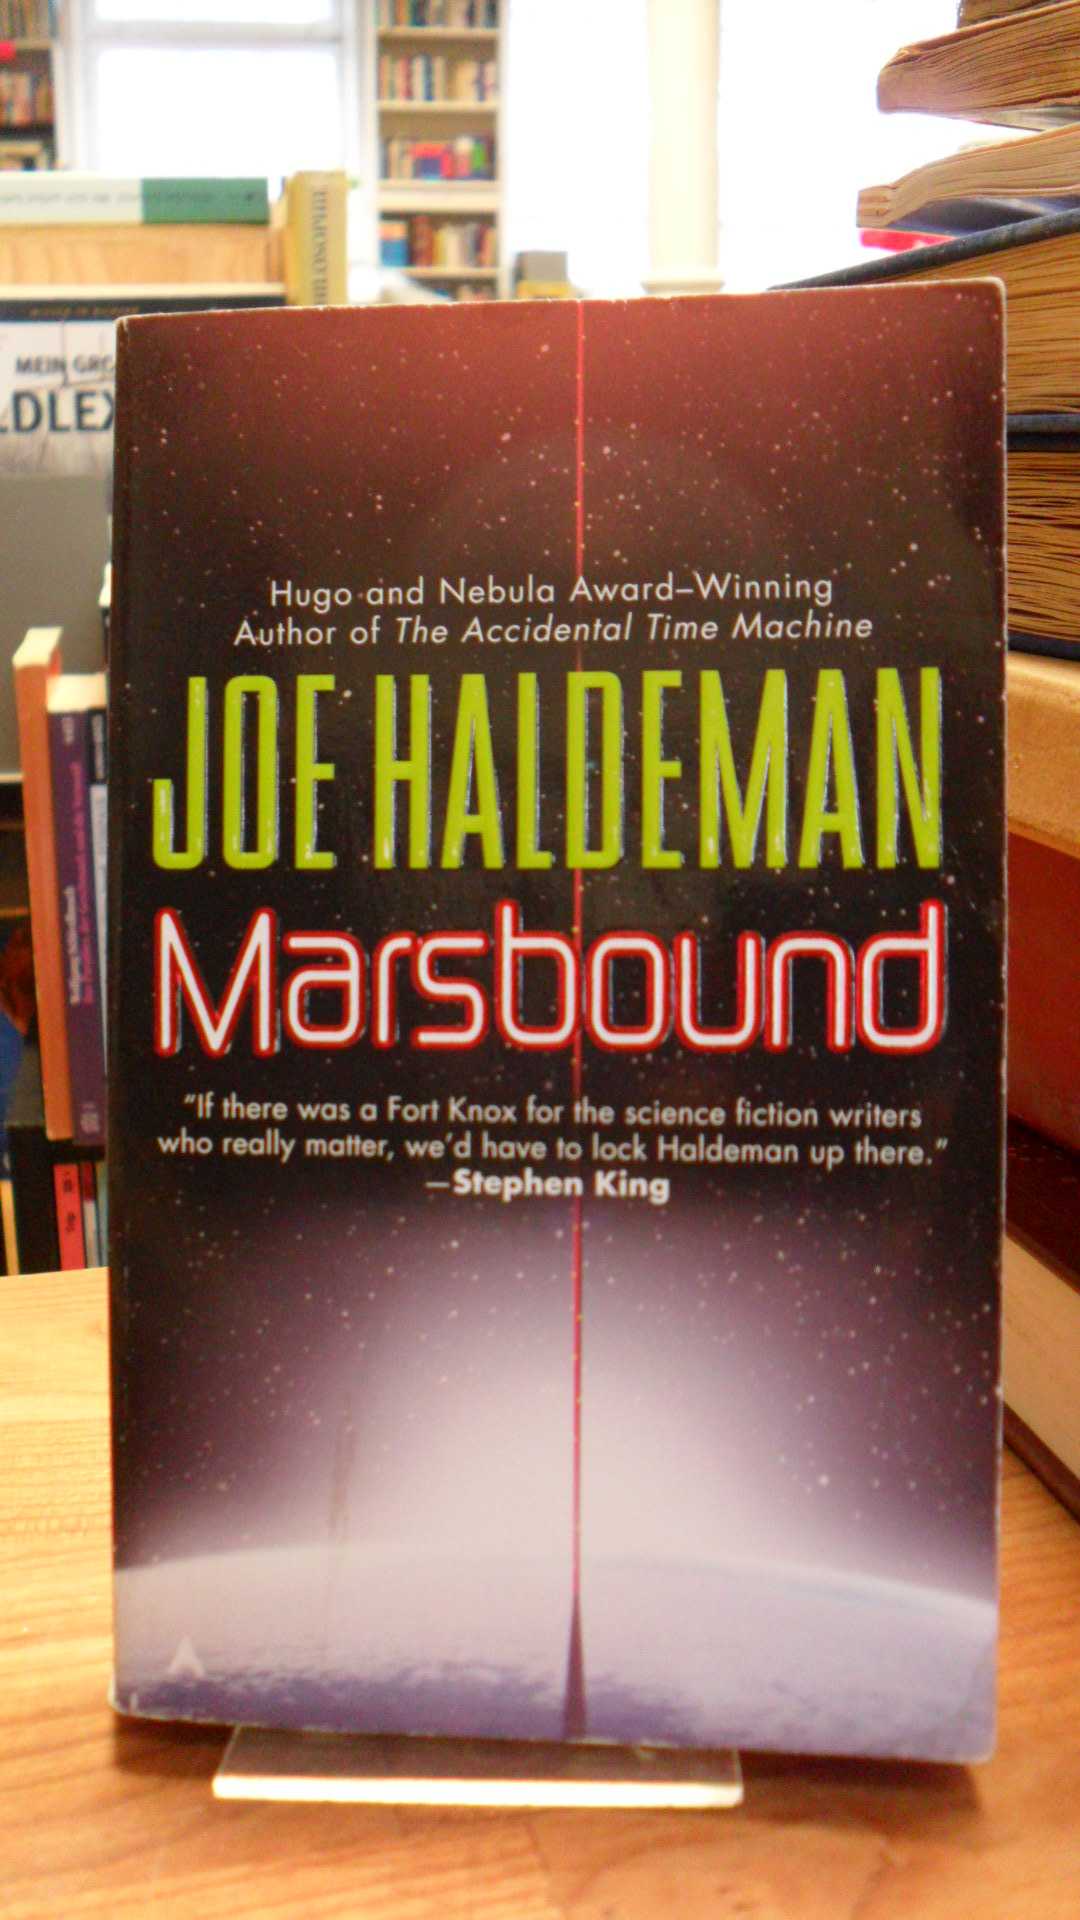 Haldeman, Marsbound,